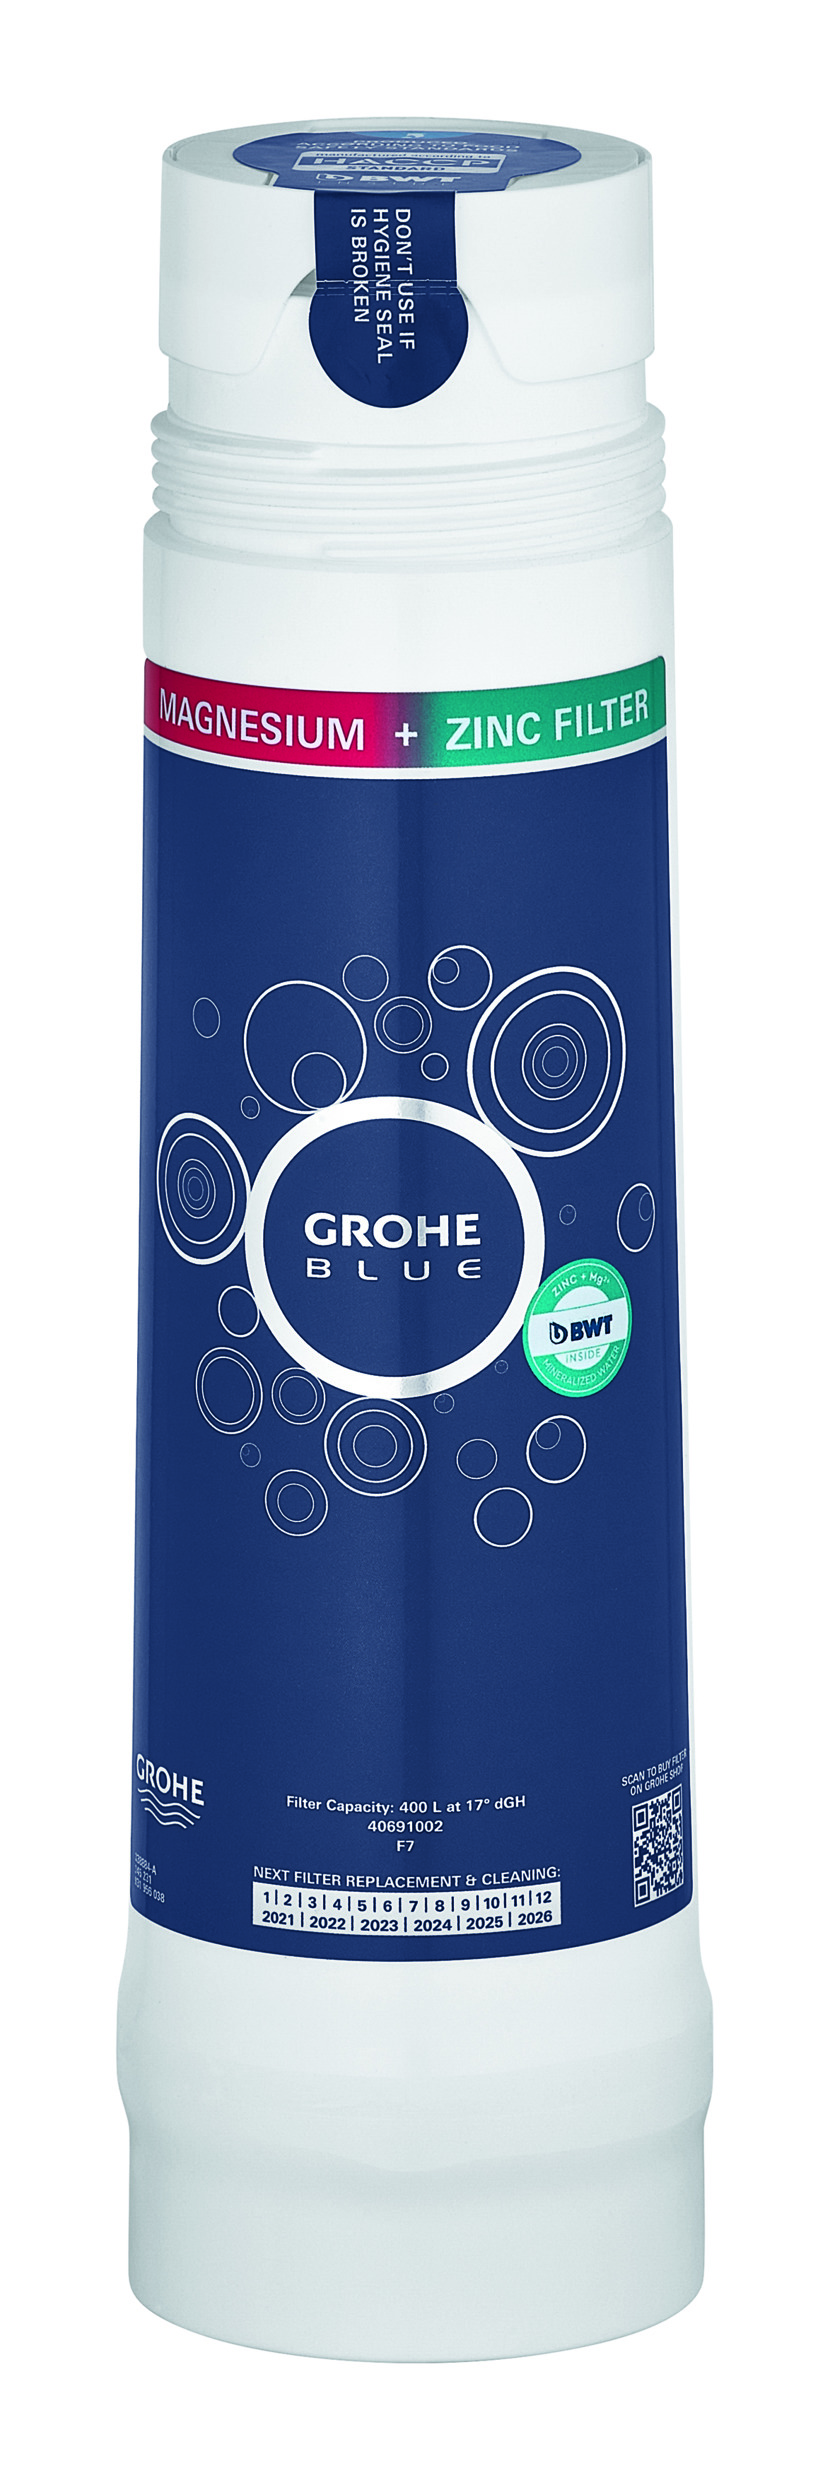 GROHE Blue® + Zinc Filter